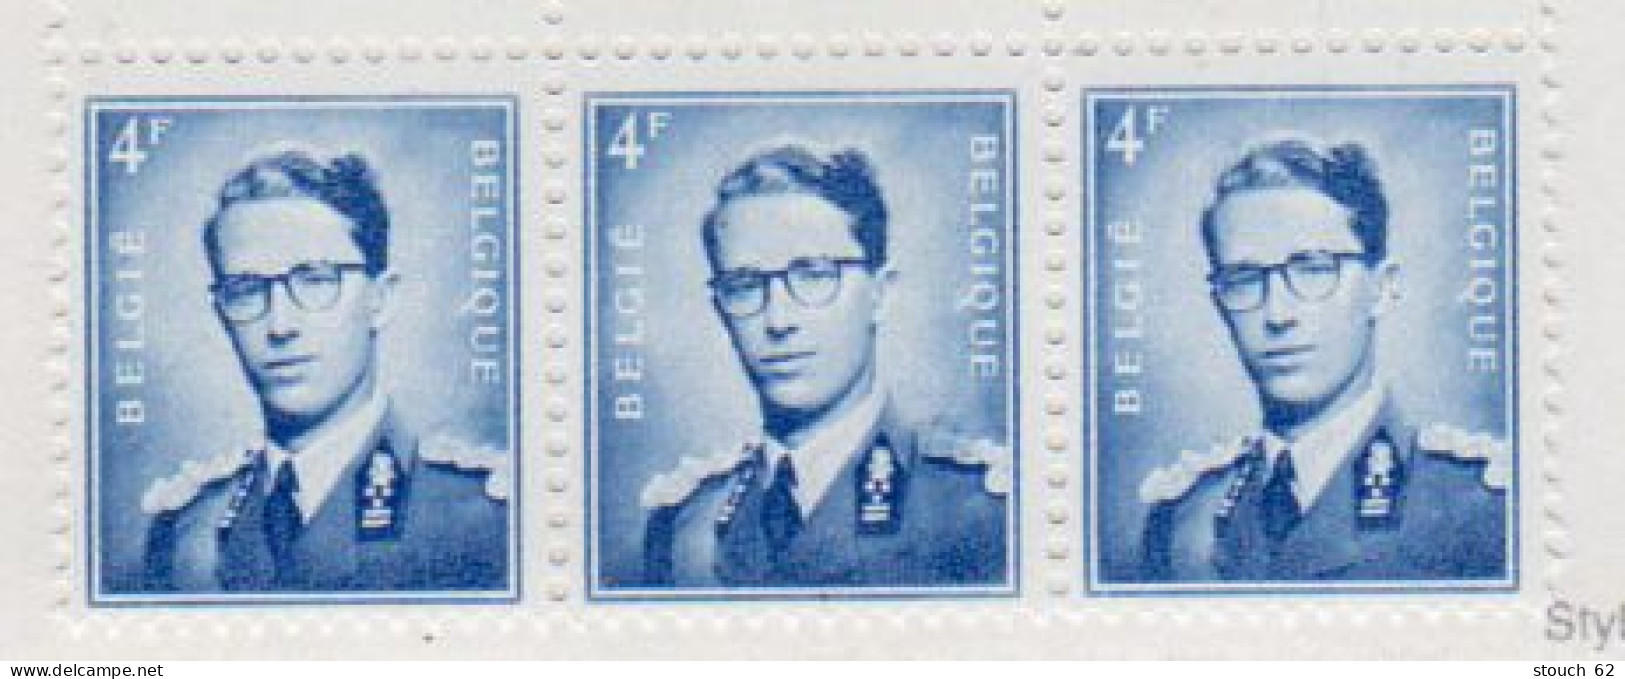 Belgique 1949, 100 Ans Du 1er Timbre-poste, 810 A** - 1931-1960